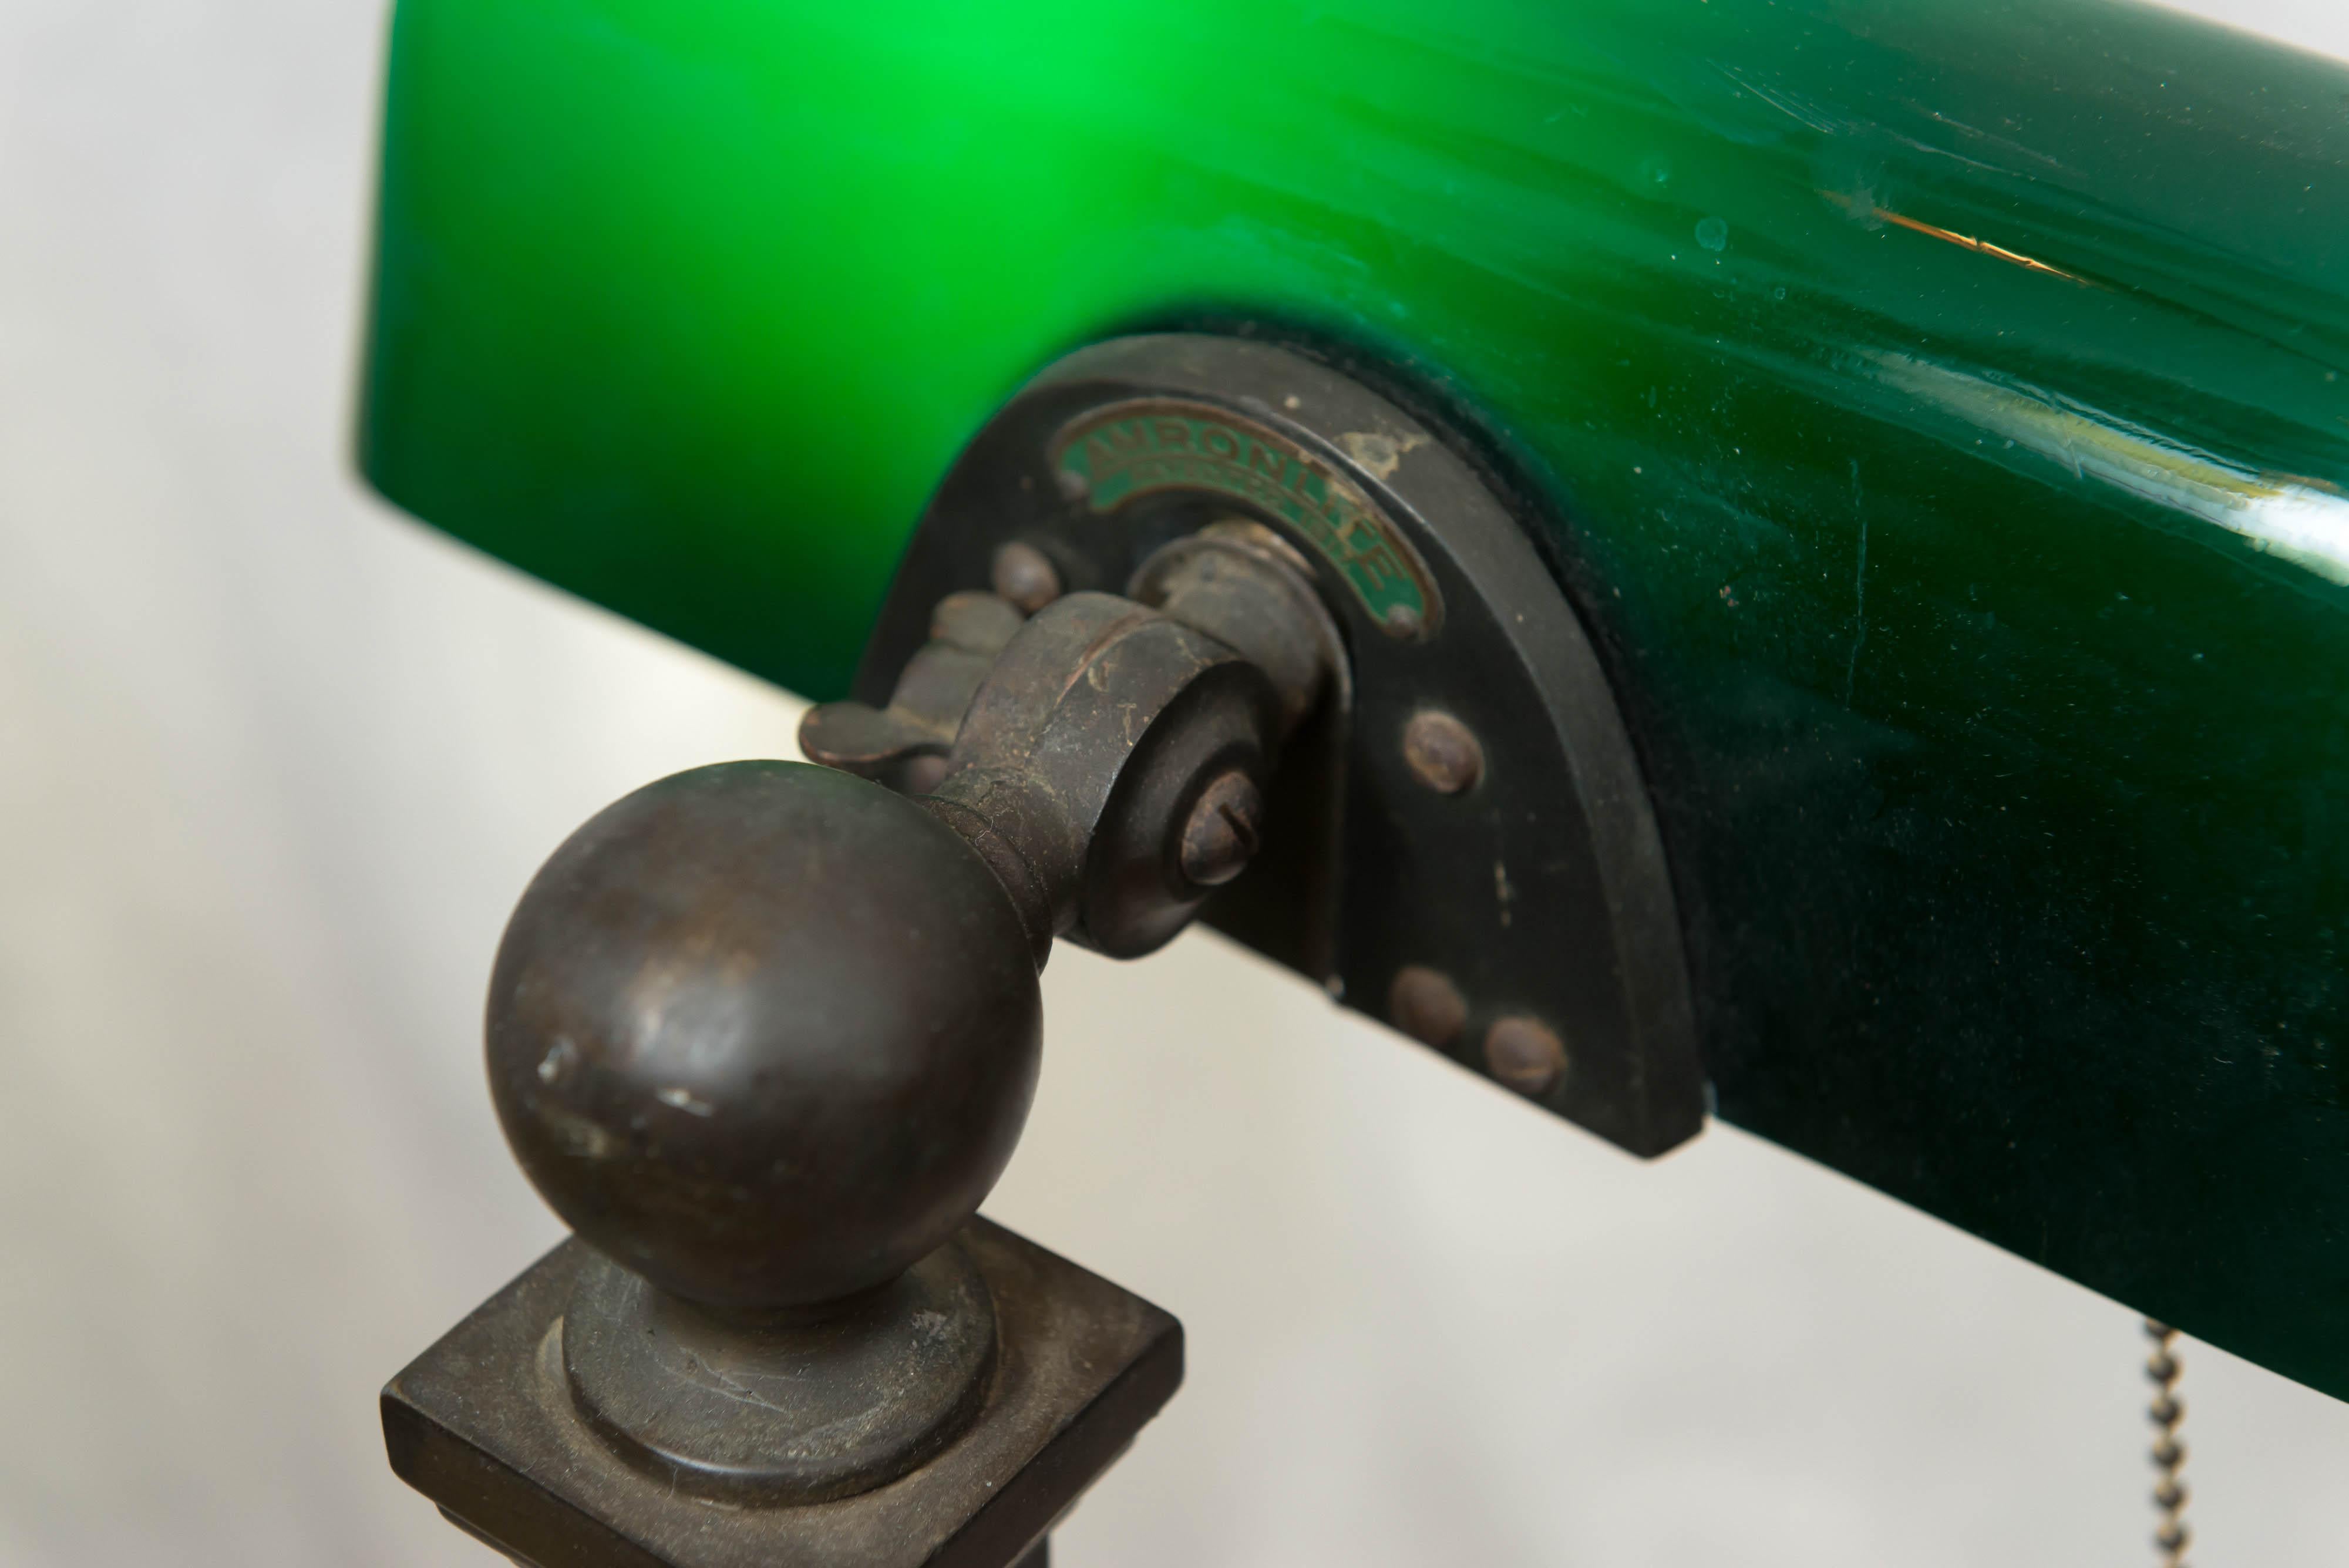 Américain Antique lampe de banquier à abat-jour vert:: signée Amronlite